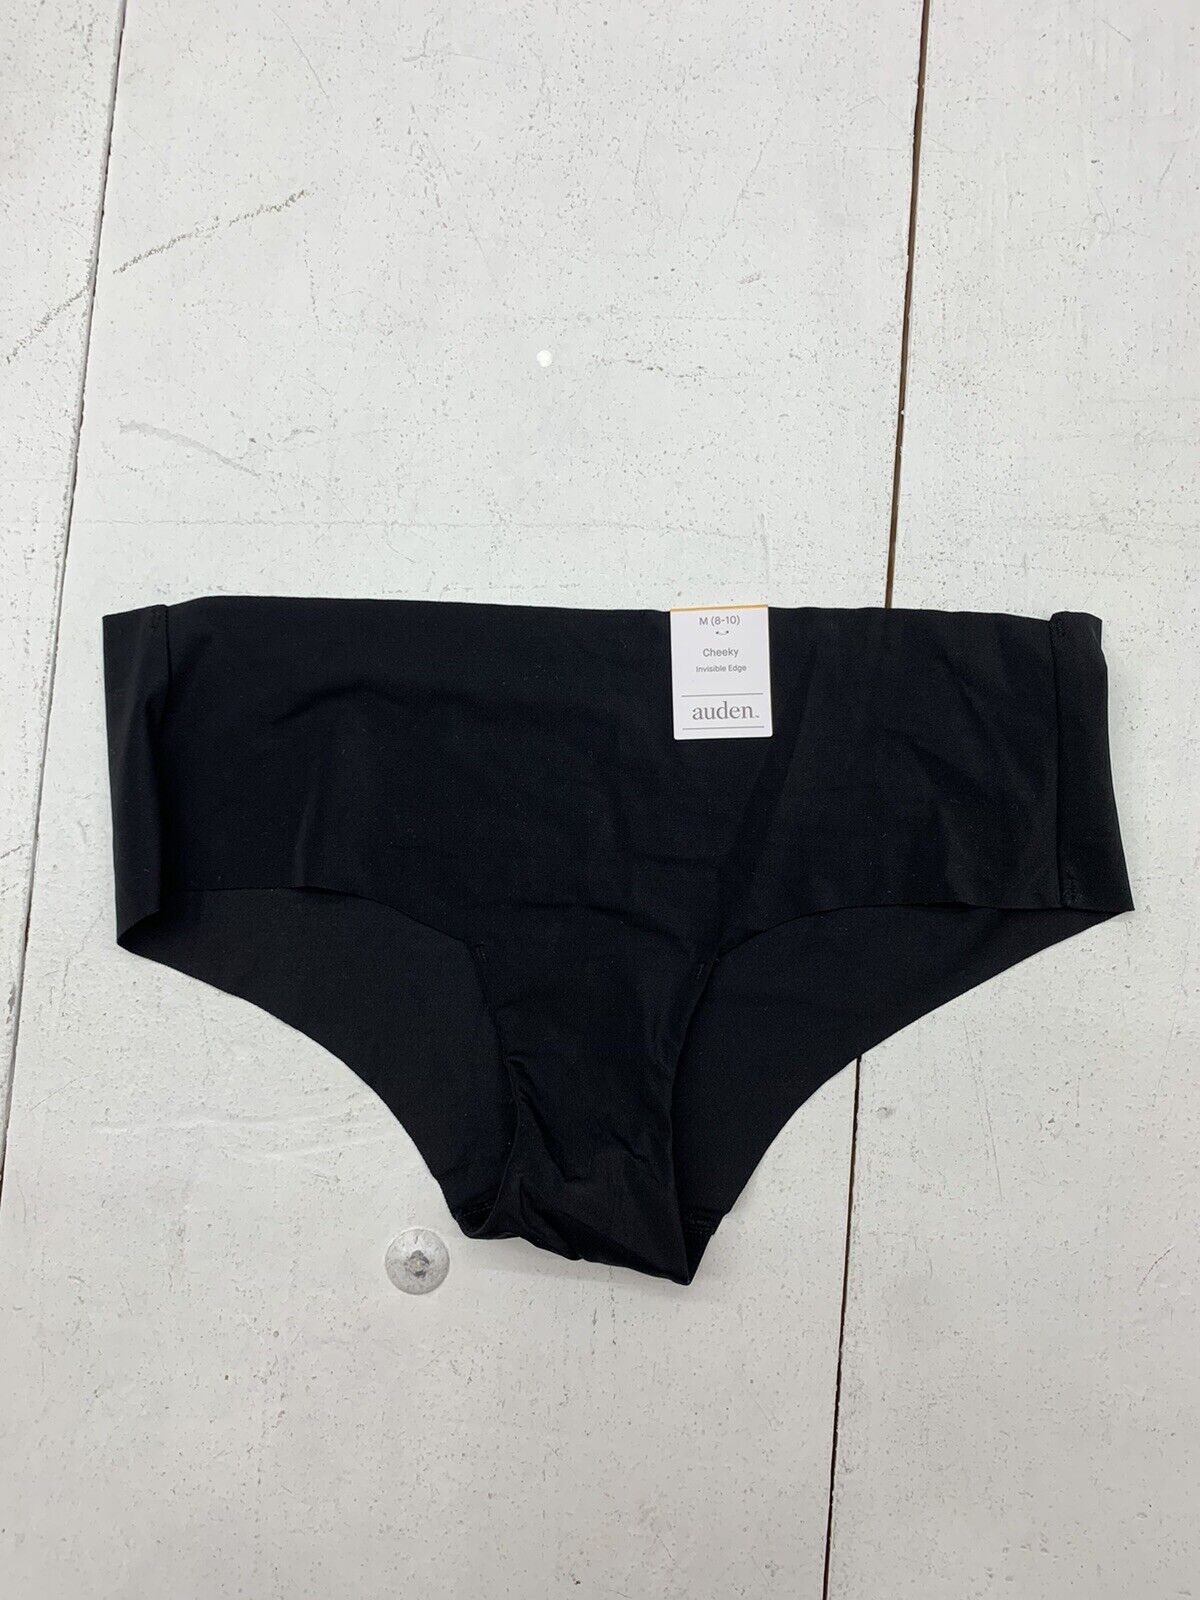 Auden Women's Comfort Hipster Underwear Black Floral Size S NWT